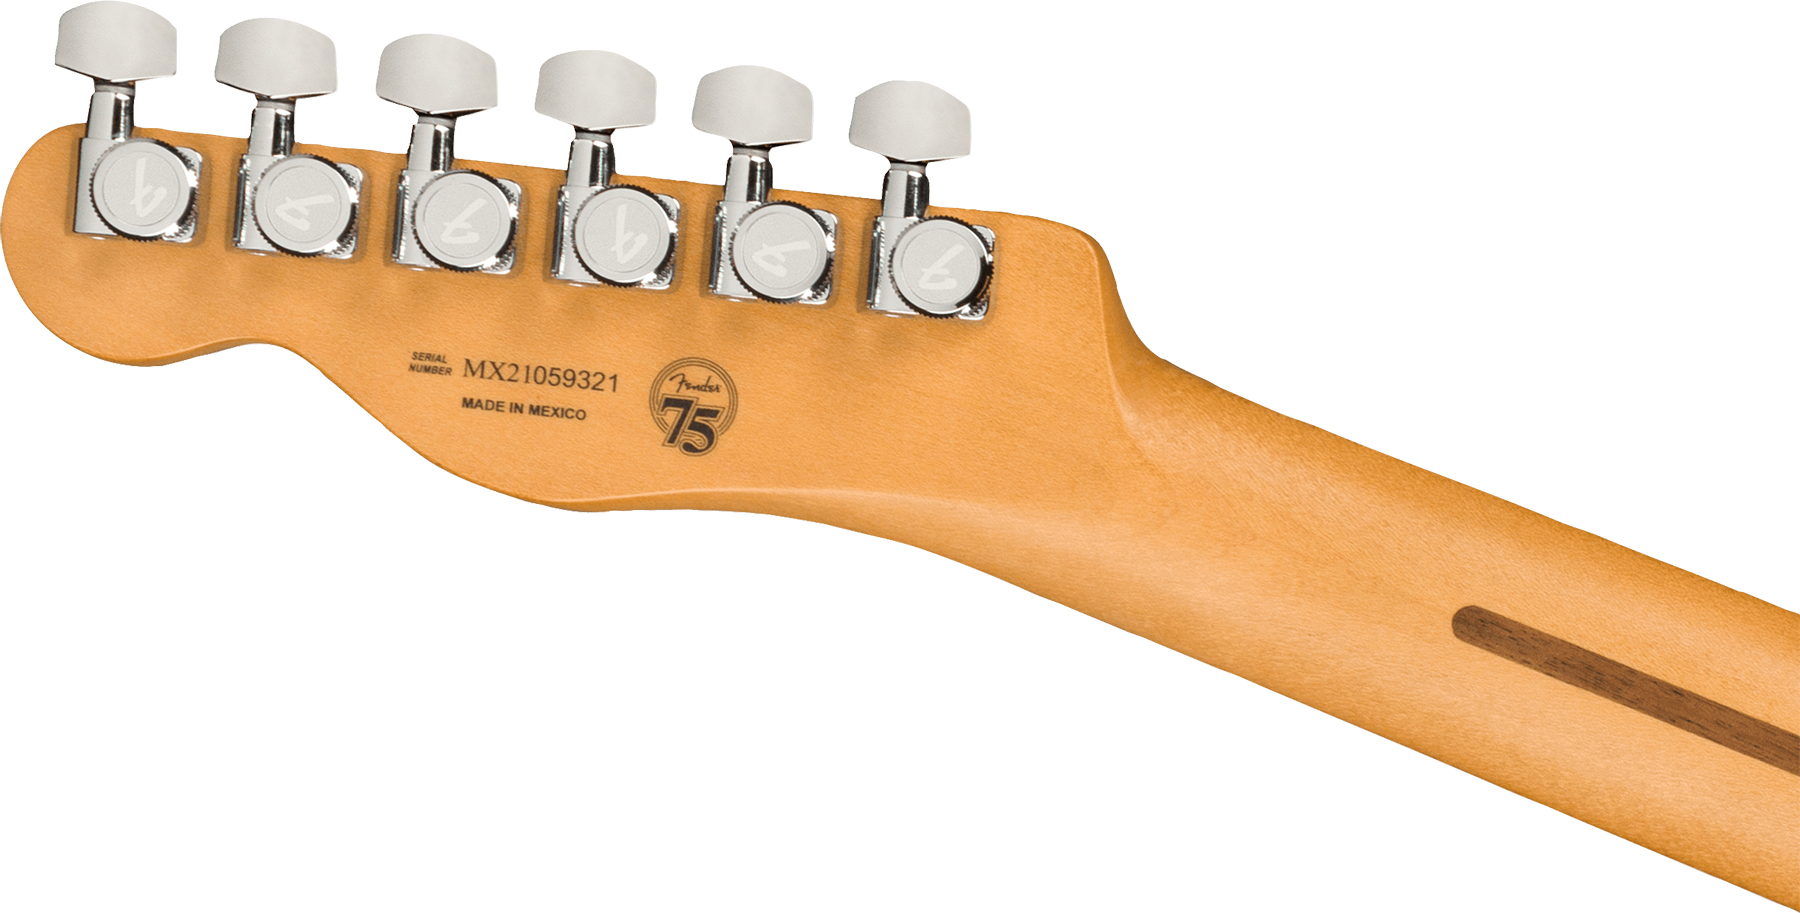 Fender Tele Player Plus Nashville Mex 3s Ht Mn - Butterscotch Blonde - Televorm elektrische gitaar - Variation 3